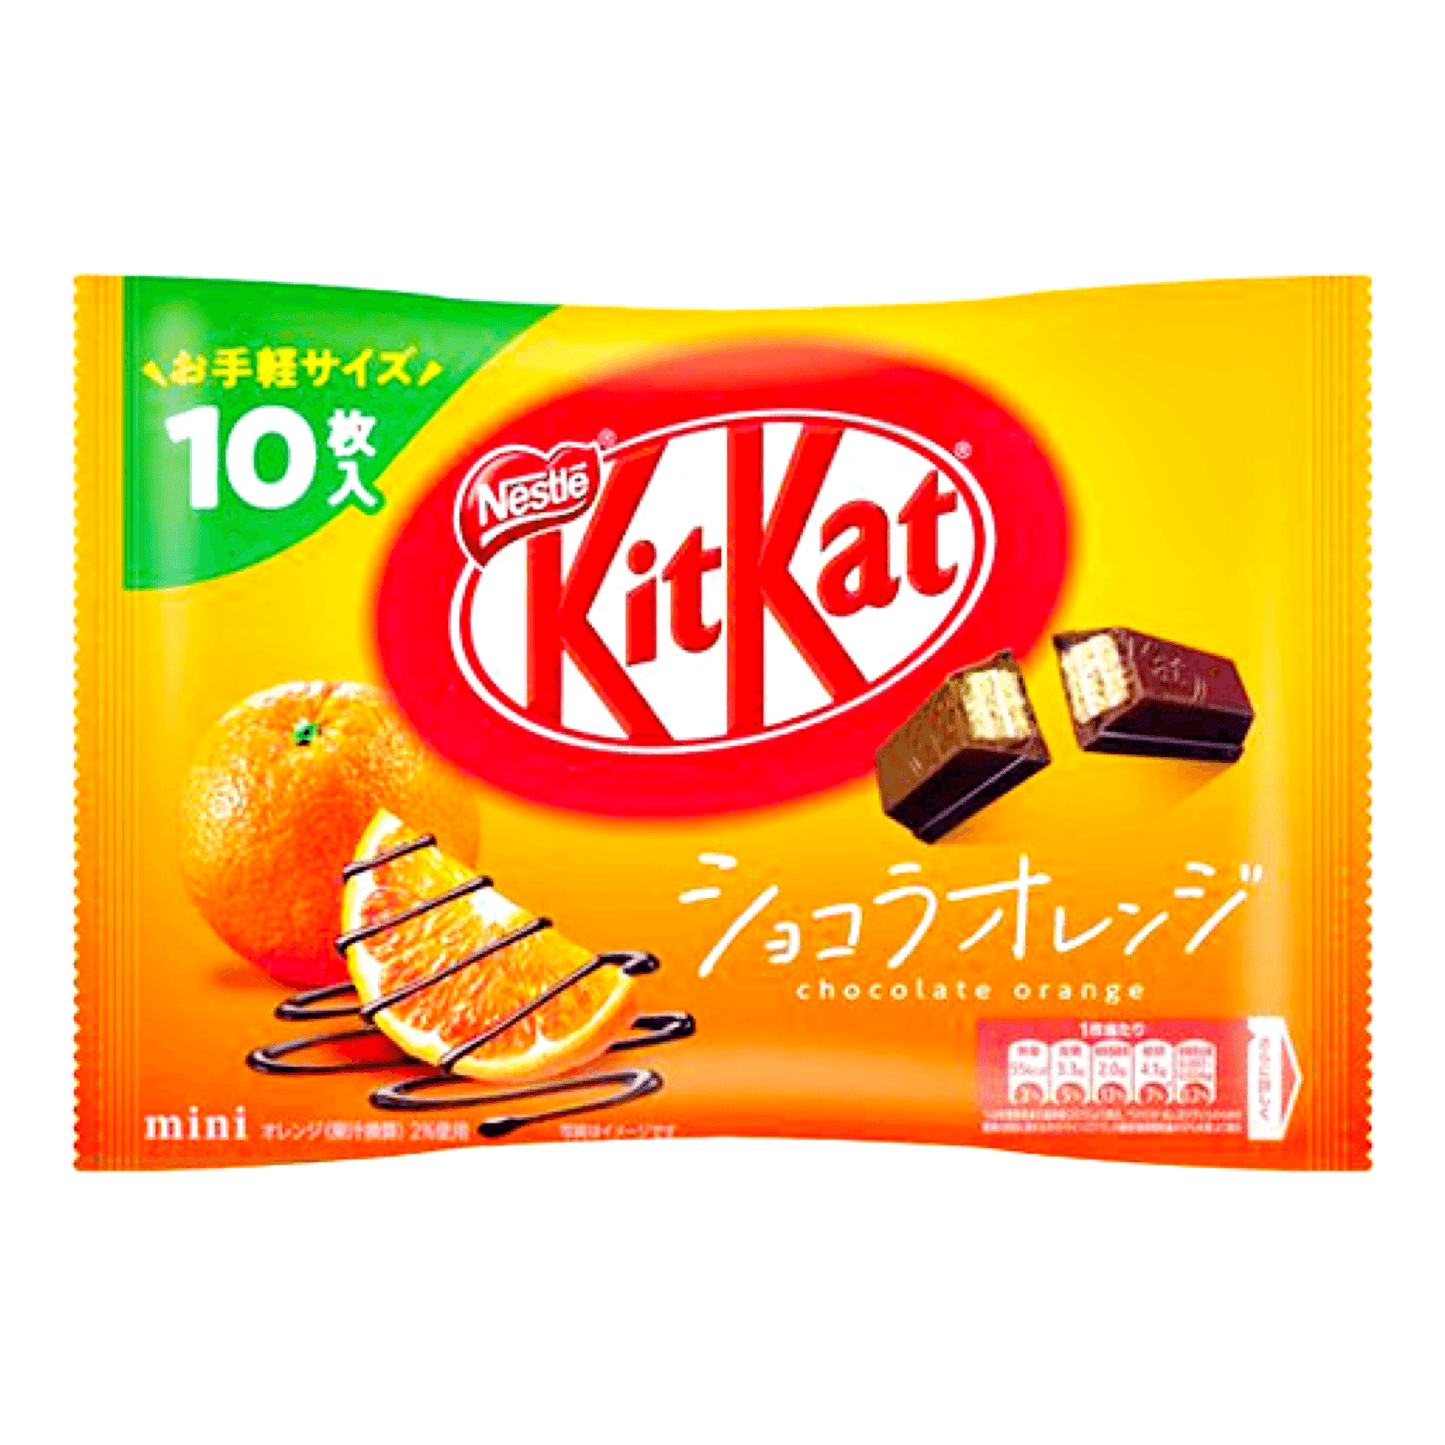 Nestle KitKat Mini Orange 10pcs - The Snacks Box - Asian Snacks Store - The Snacks Box - Korean Snack - Japanese Snack